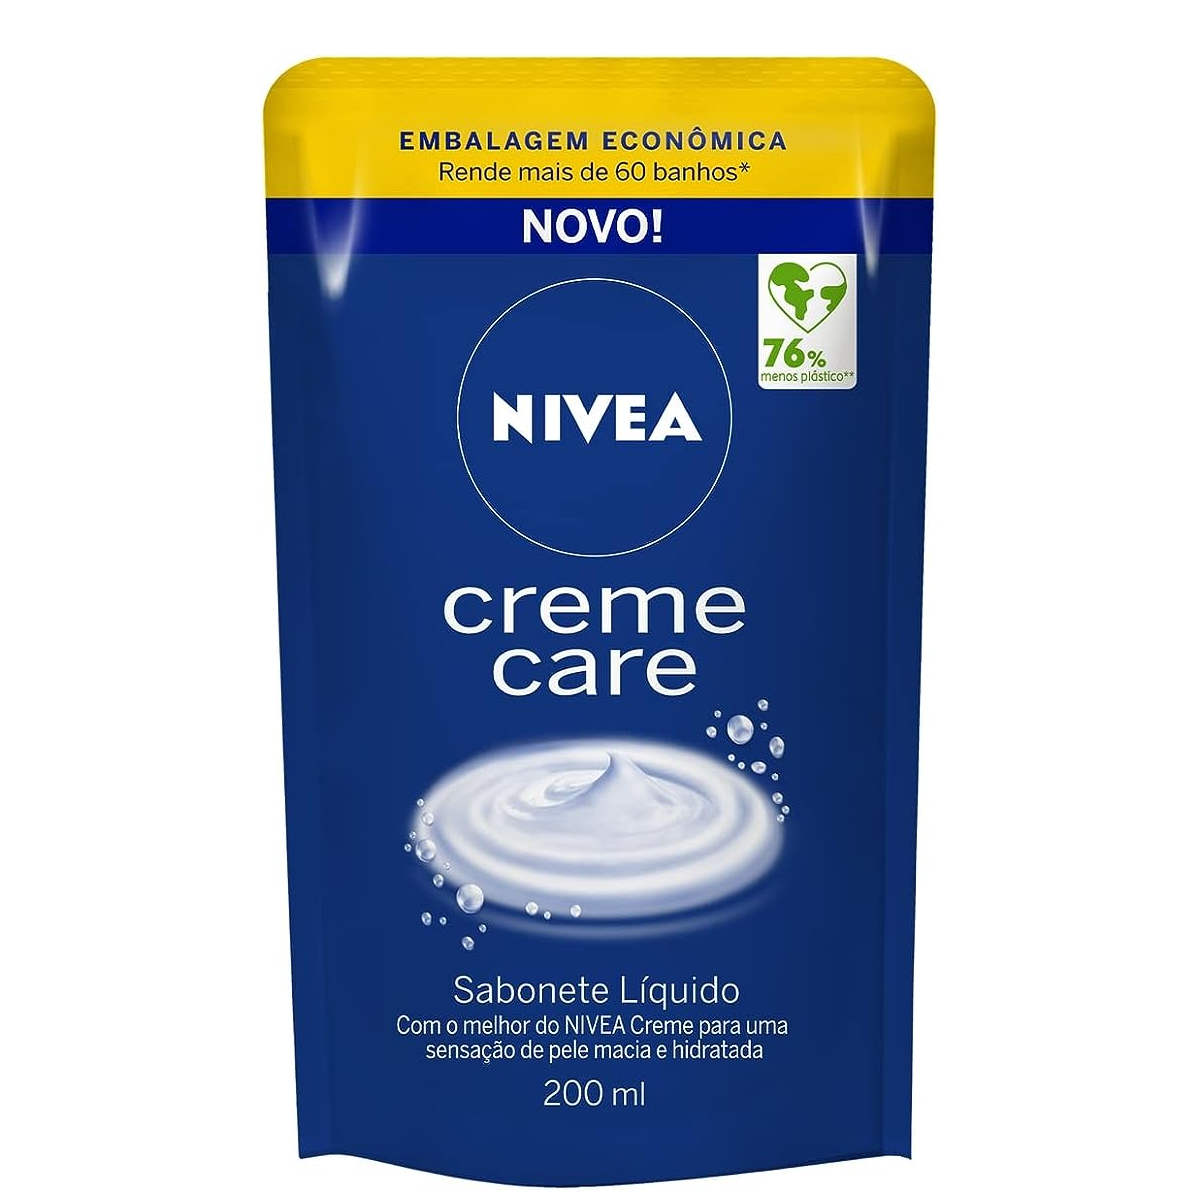 NIVEA Sabonete Líquido Refil Creme Care 200ml – Sensação de pele intensamente hidratada com o melhor do NIVEA Creme